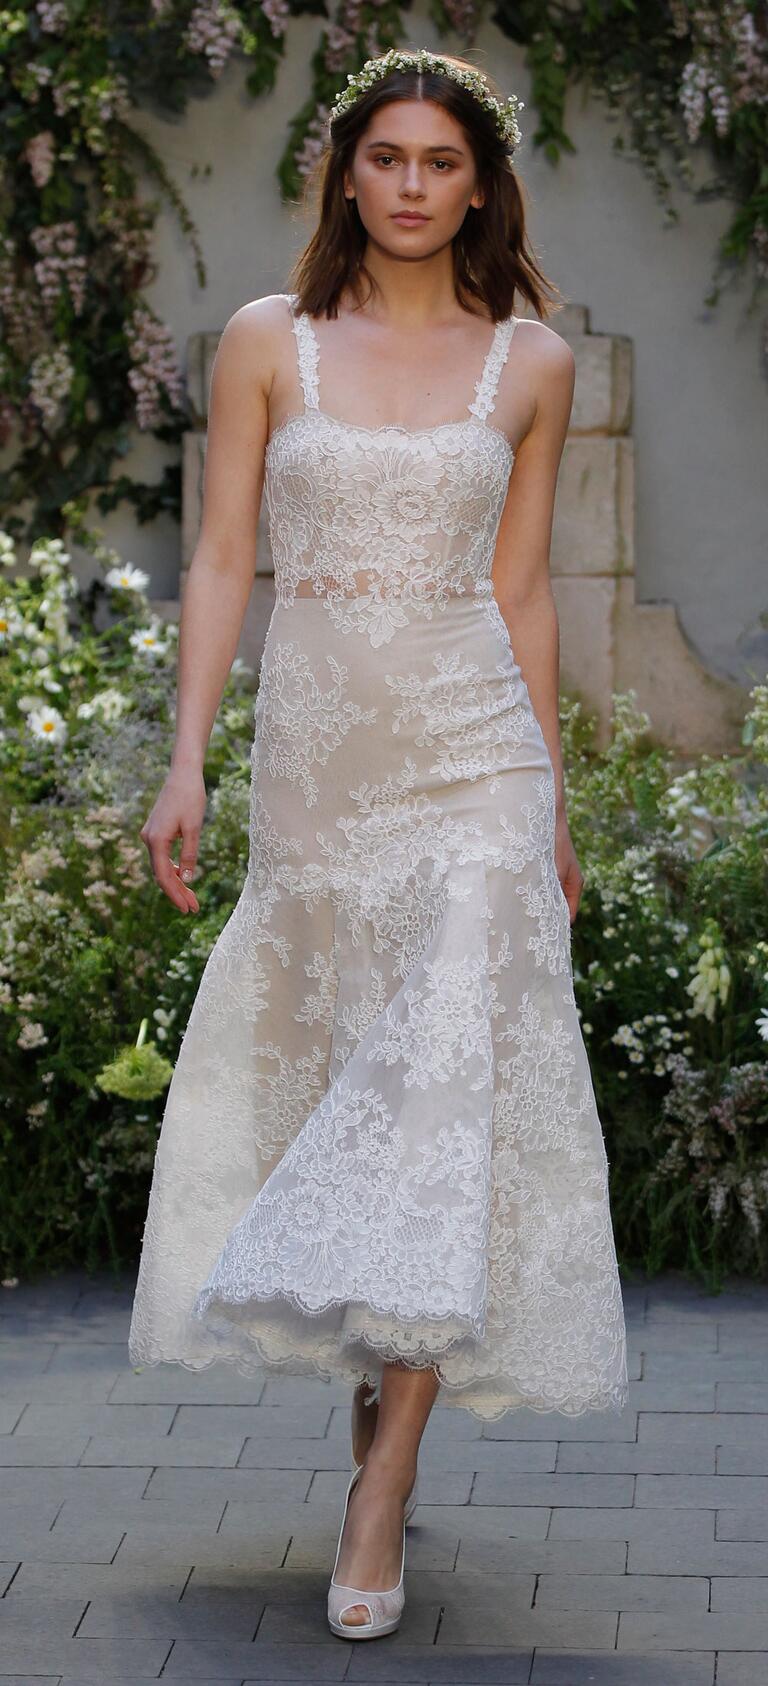 15 Wedding Dresses Perfect for an Elopement - crazyforus